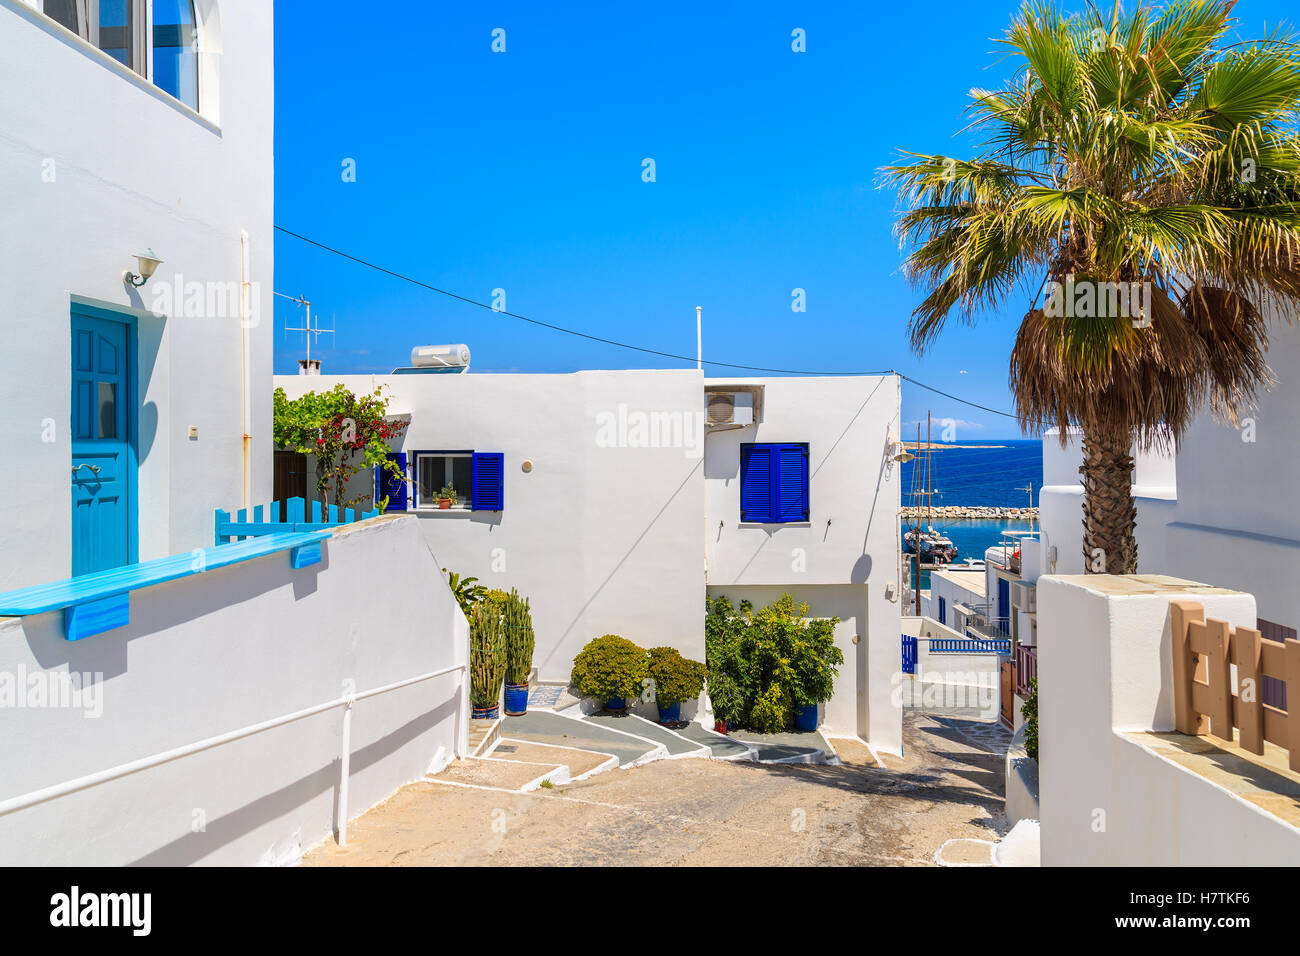 Typisch griechisch, die weiß getünchten Häuser auf Straße in Naoussa Stadt auf der Insel Paros, Griechenland Stockfoto